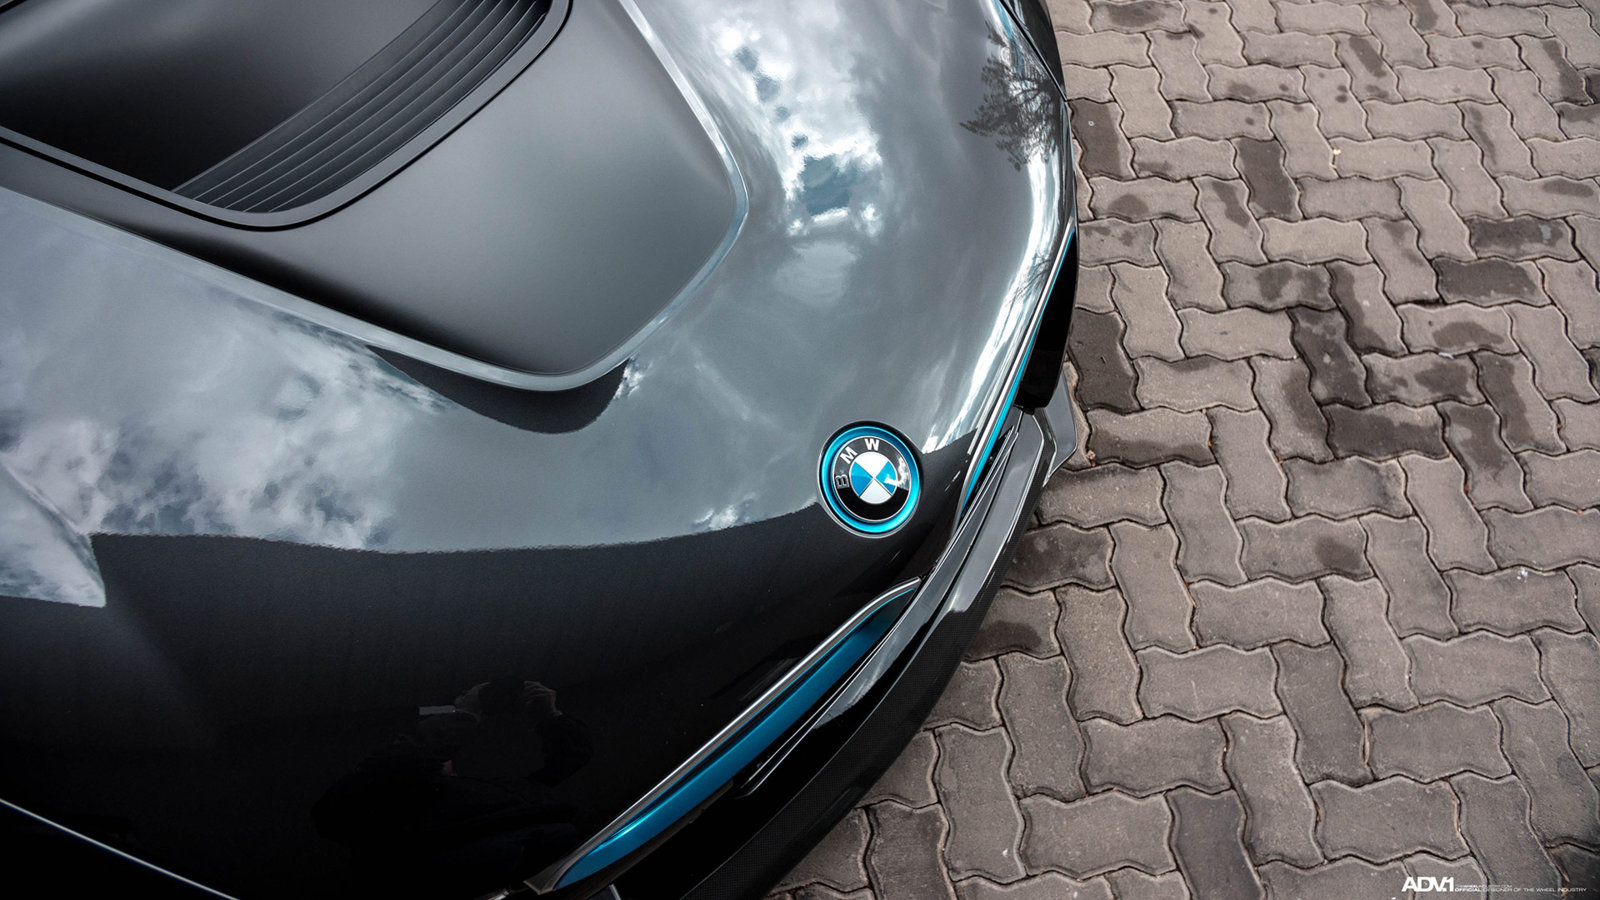 bmw-i8-custom-wheels-blue-lips-electric-car-rims-c.jpg